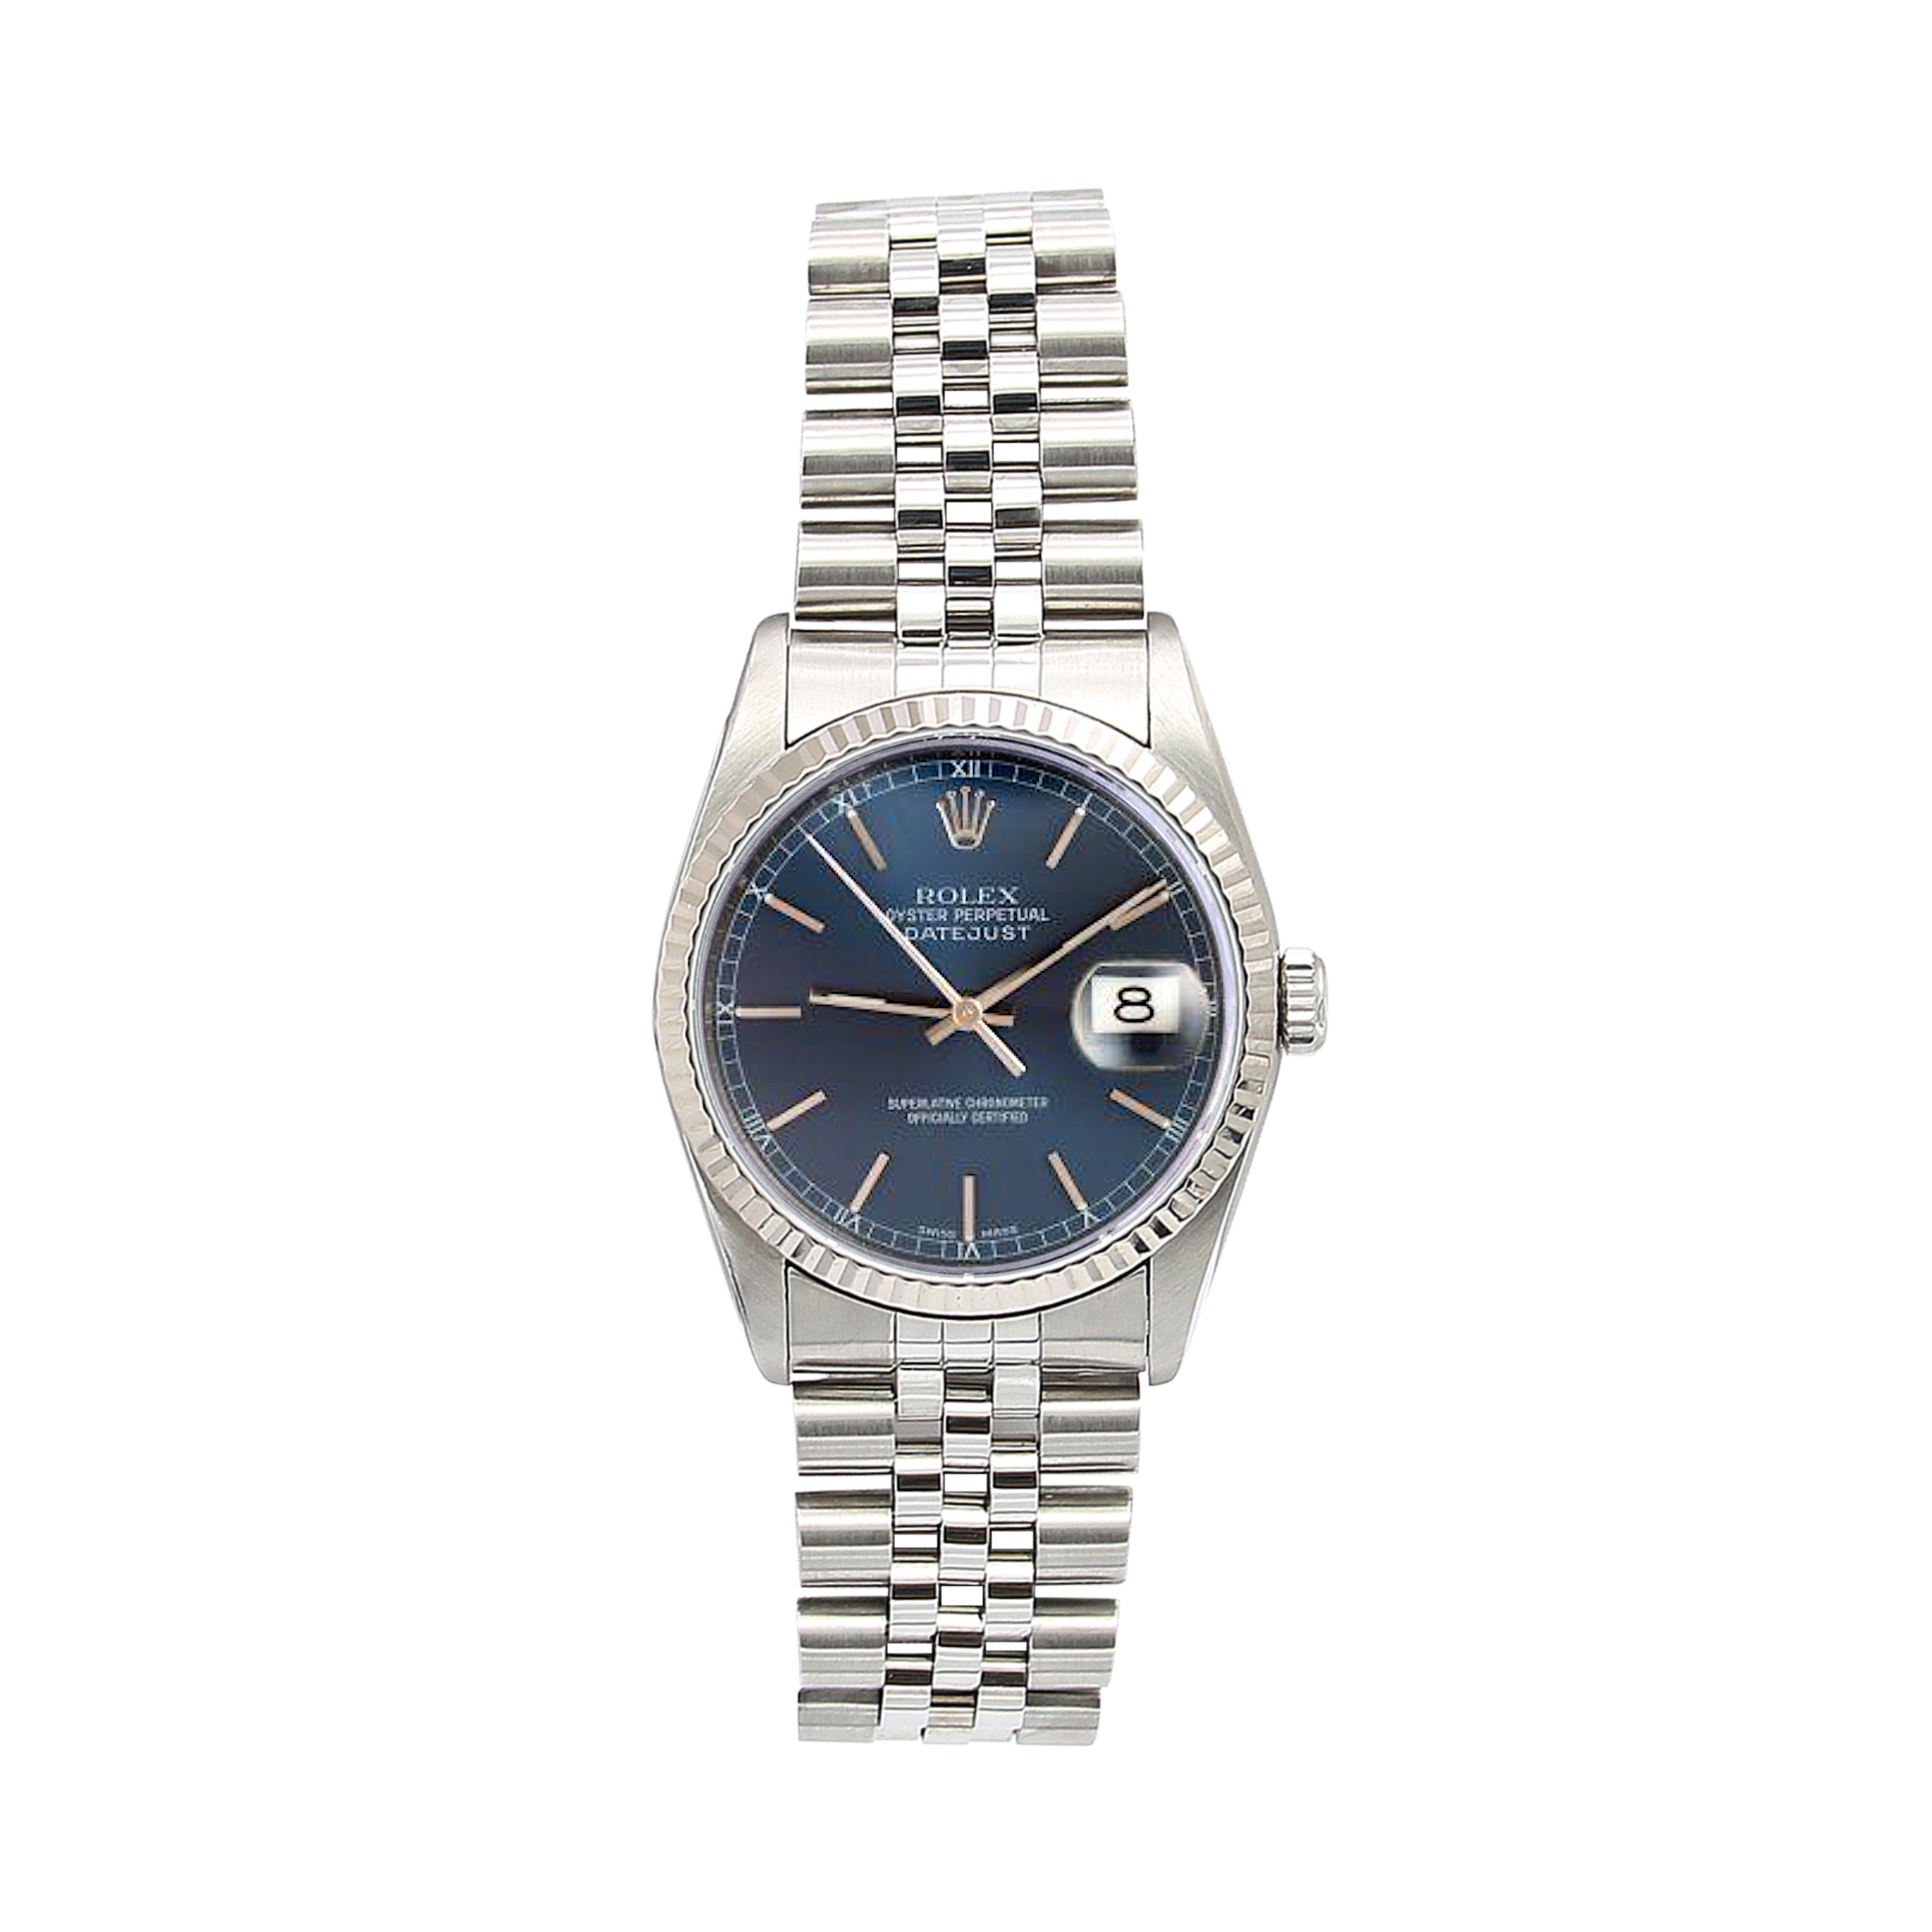 Rolex Datejust 36 ref. 16234 Blaues Soleil-Zifferblatt mit kreisförmigen Stunden – Komplettset